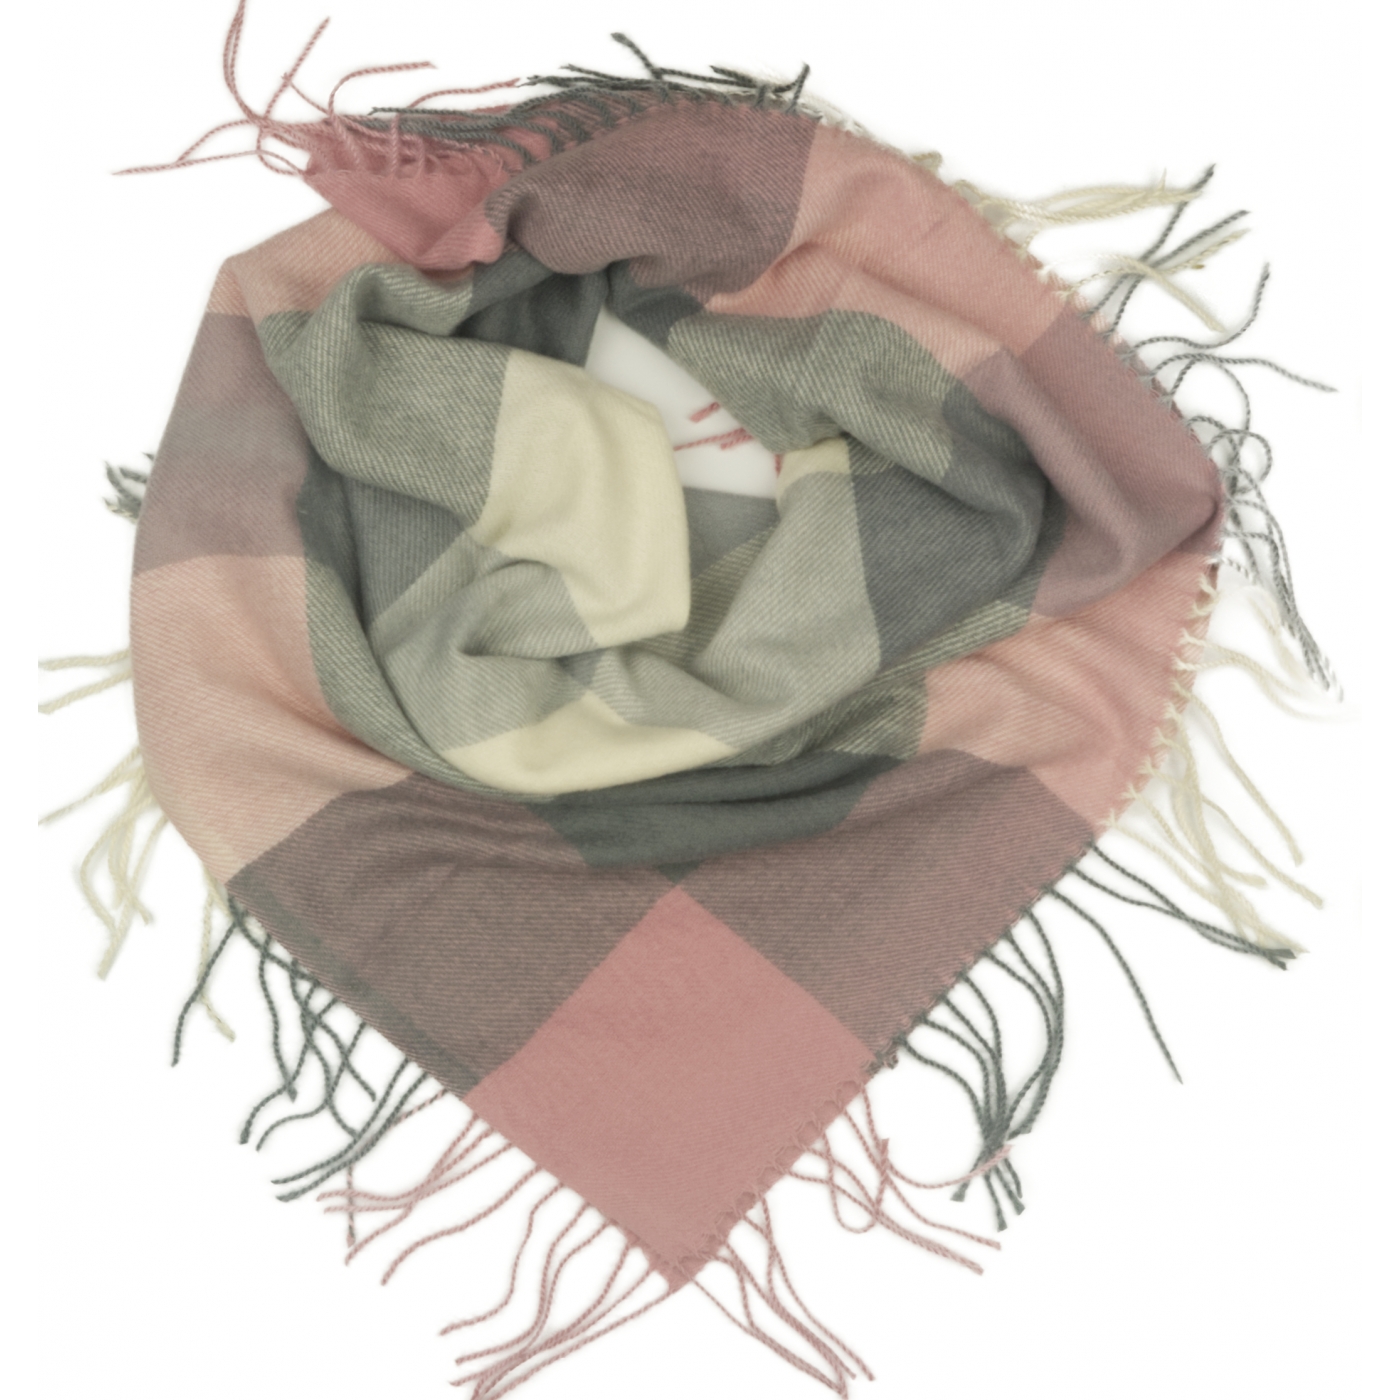 Duża chusta szal w kratę Tiffi - szary/brudny róż/kremowy (rozmiar L)